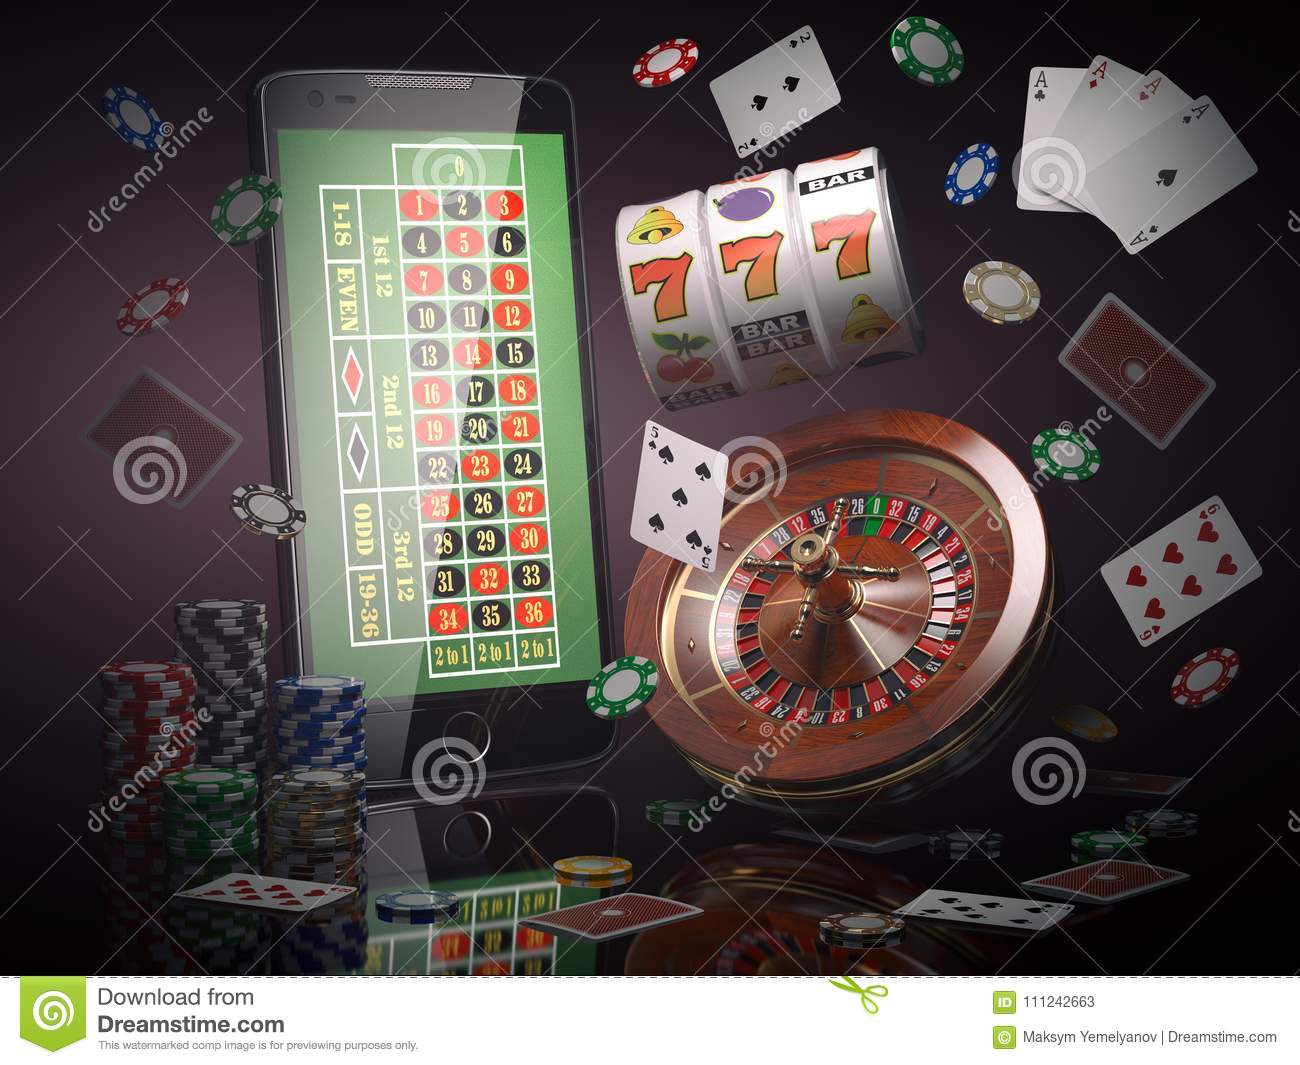 Booi casino мобильная версия